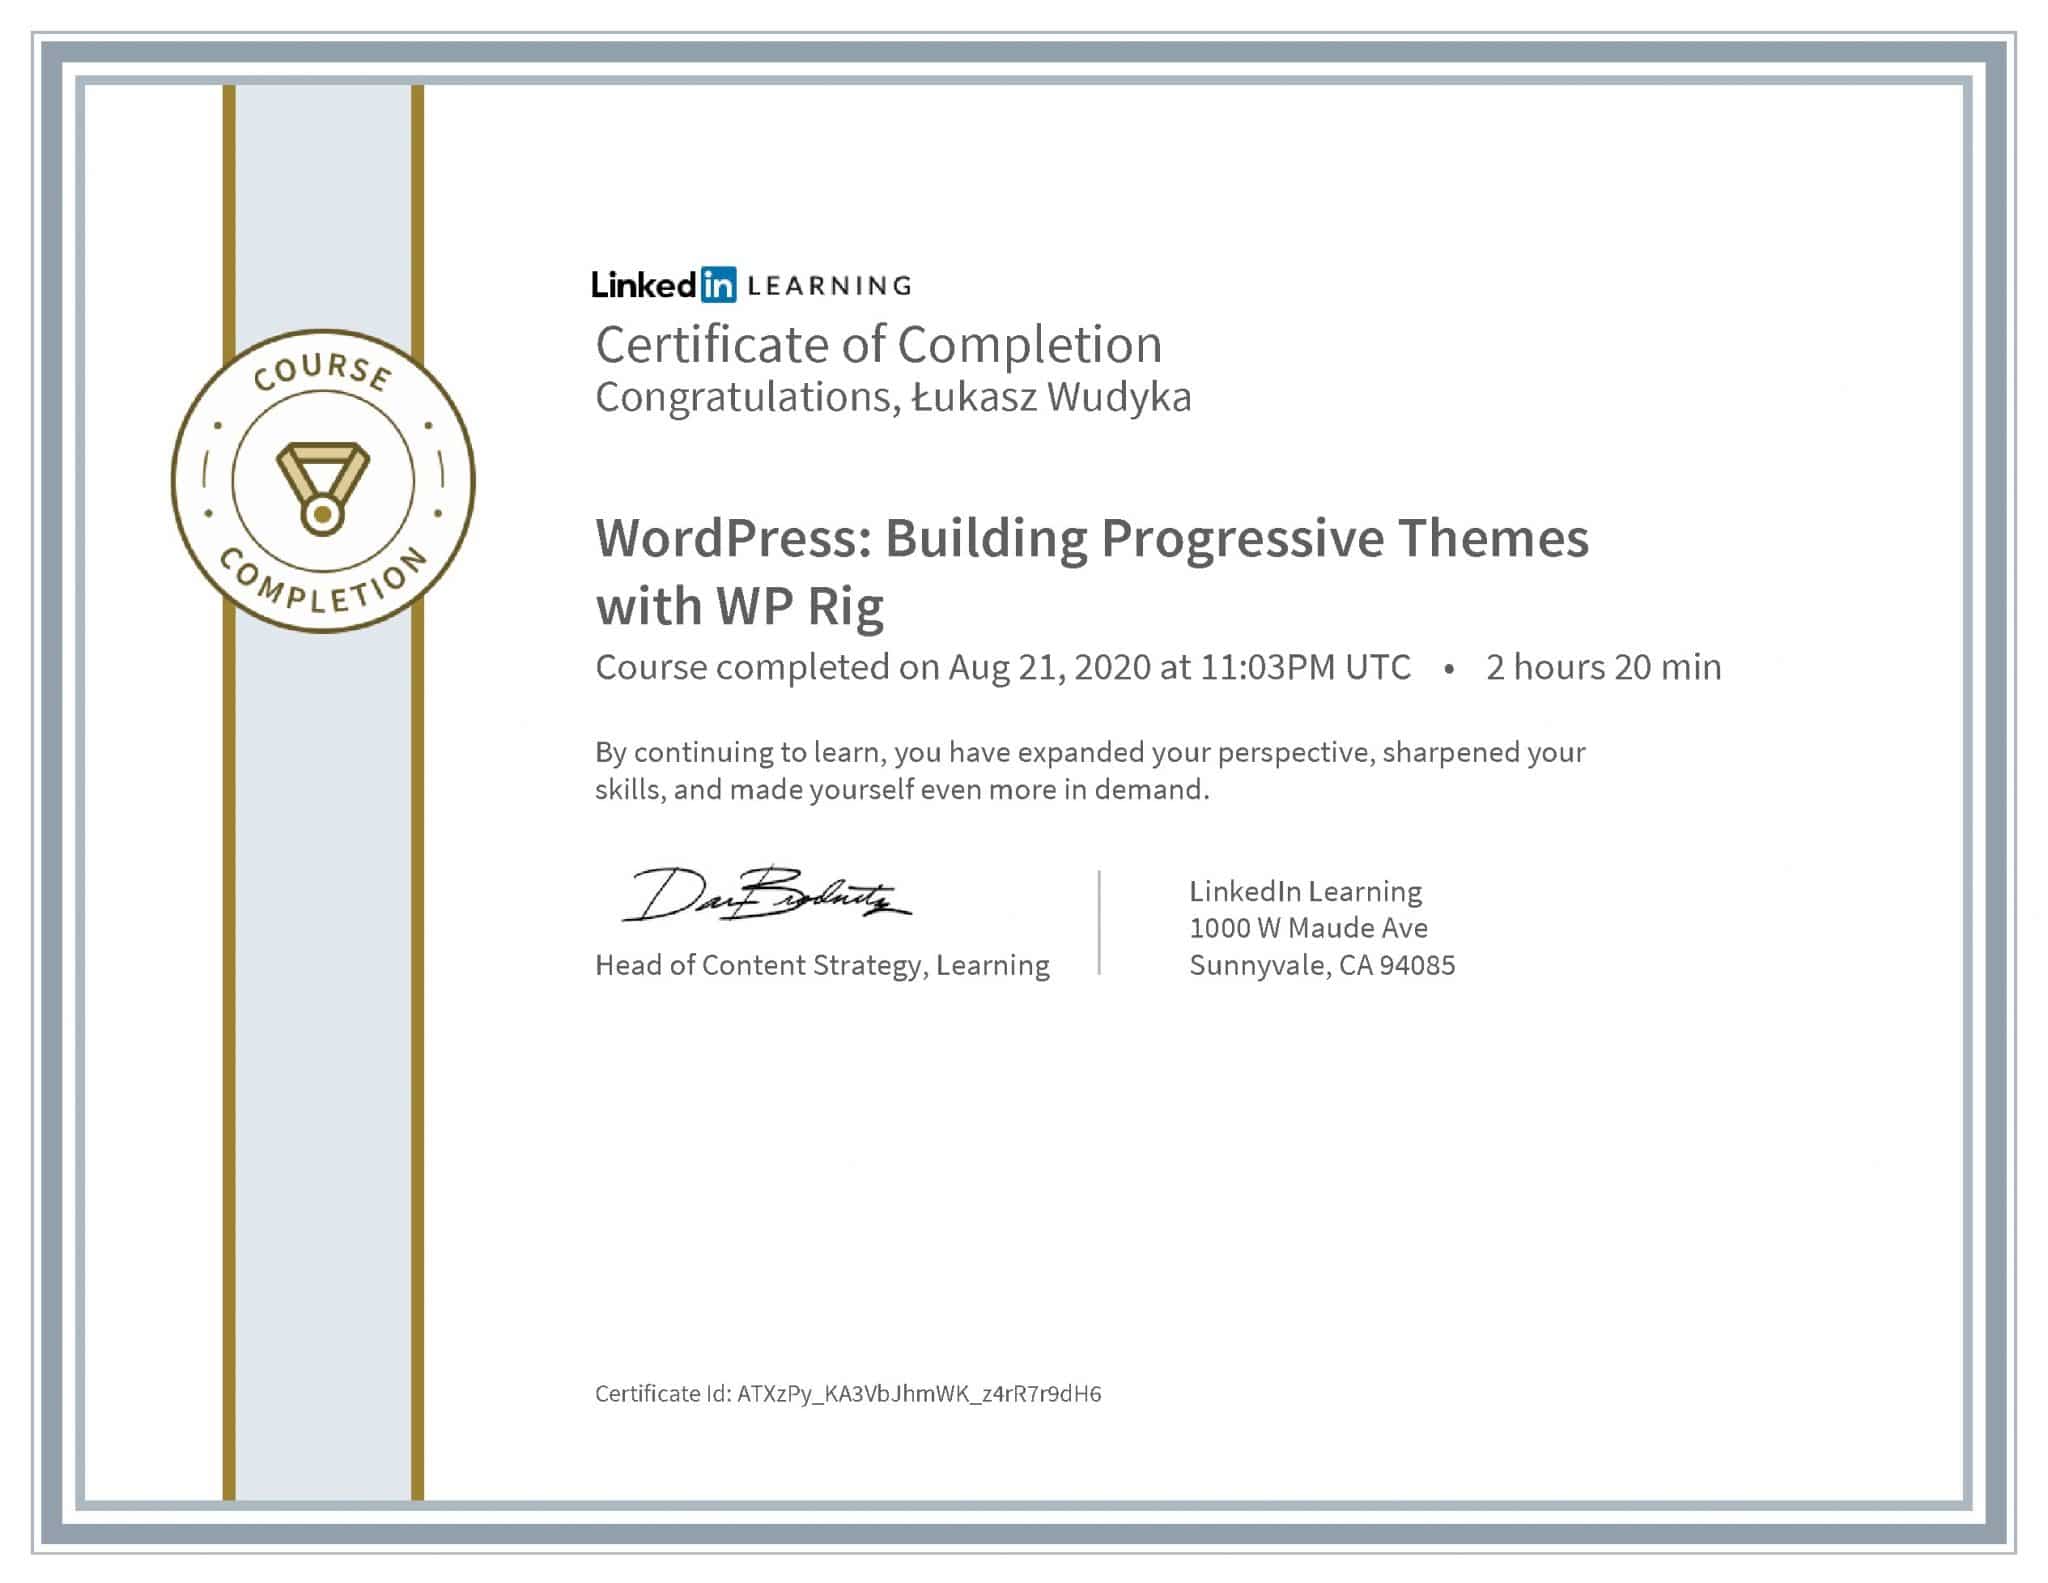 Łukasz Wudyka certyfikat LinkedIn WordPress: Building Progressive Themes with WP Rig